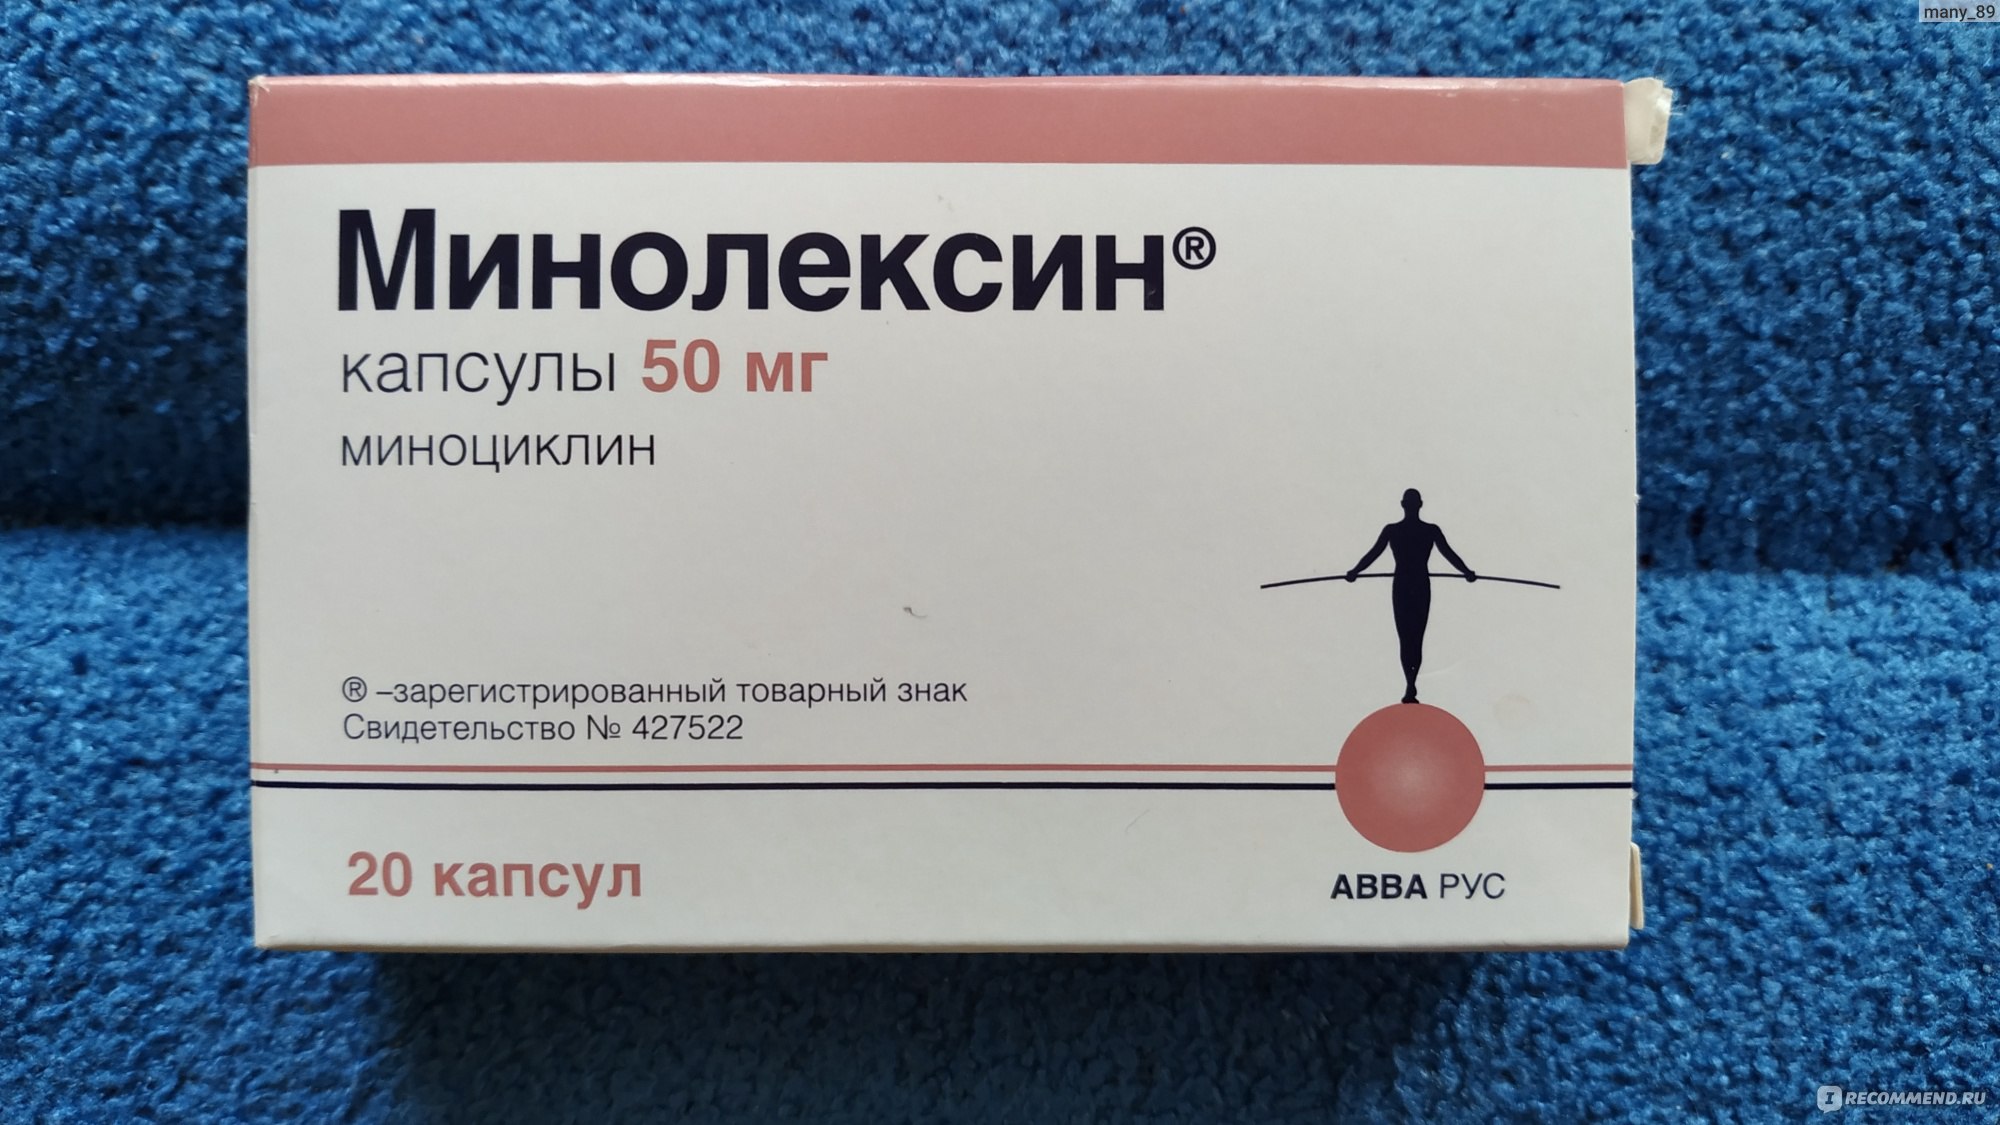 Антибиотик Авва рус Минолексин - «Помог справиться с прыщами, но .